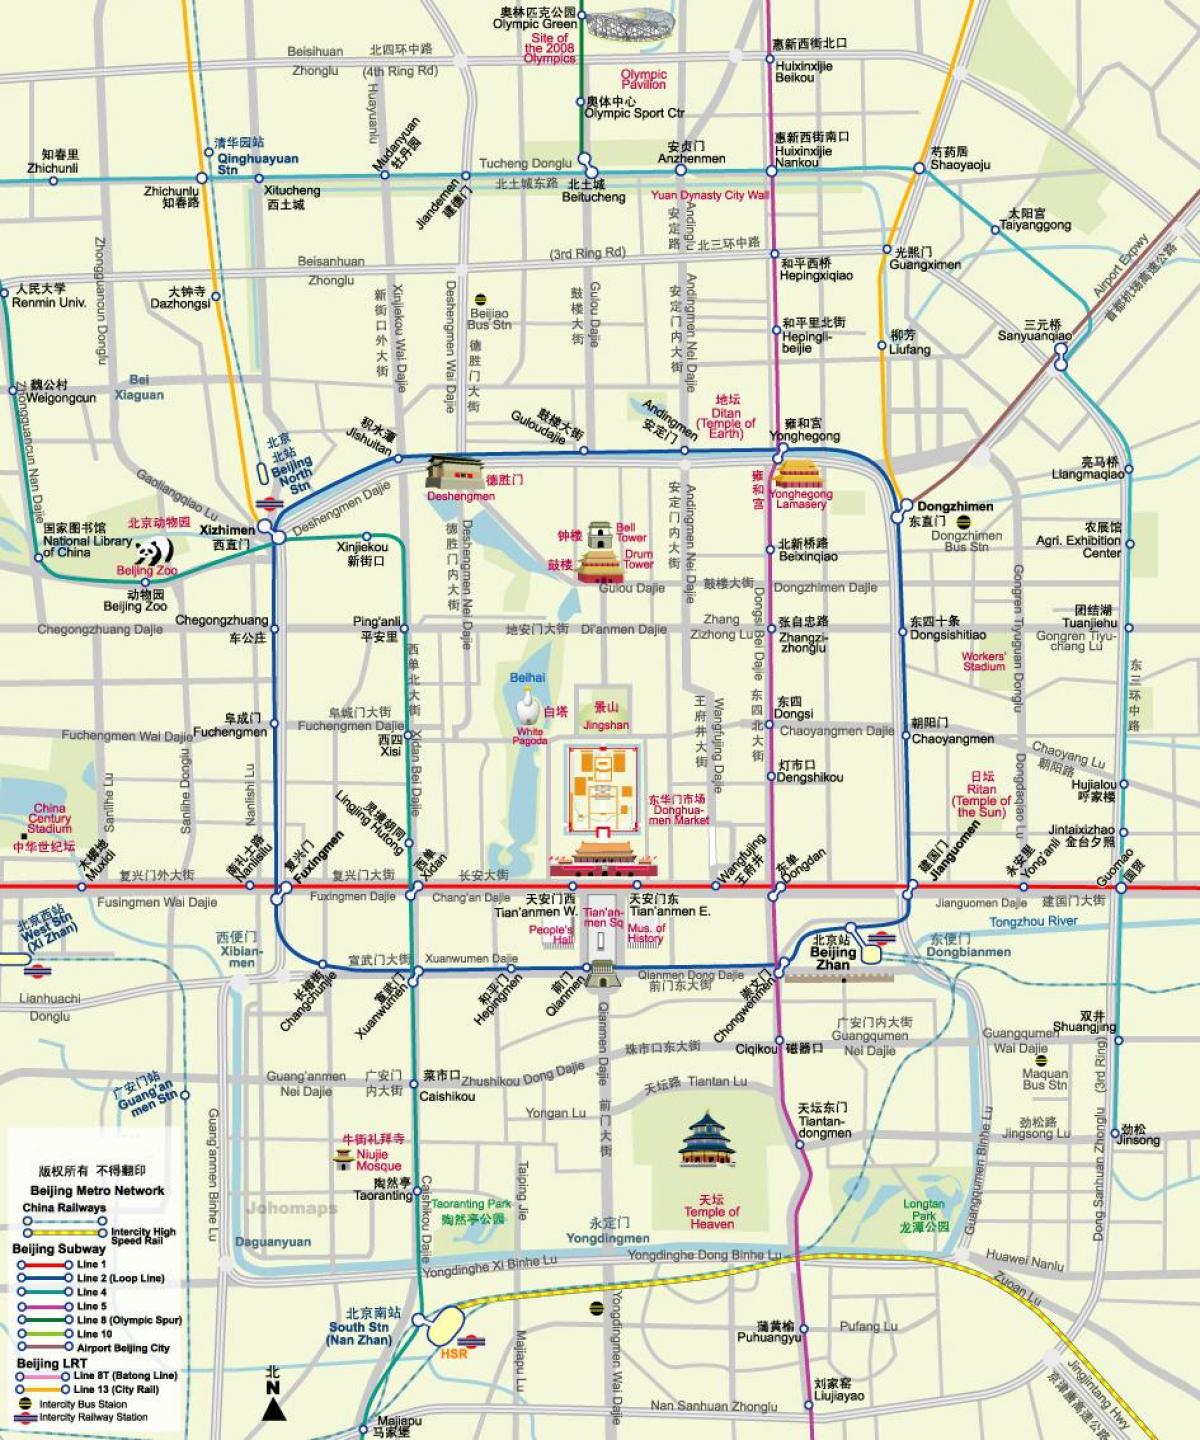 mapa de Beijing subway mapa con lugares de interés turístico